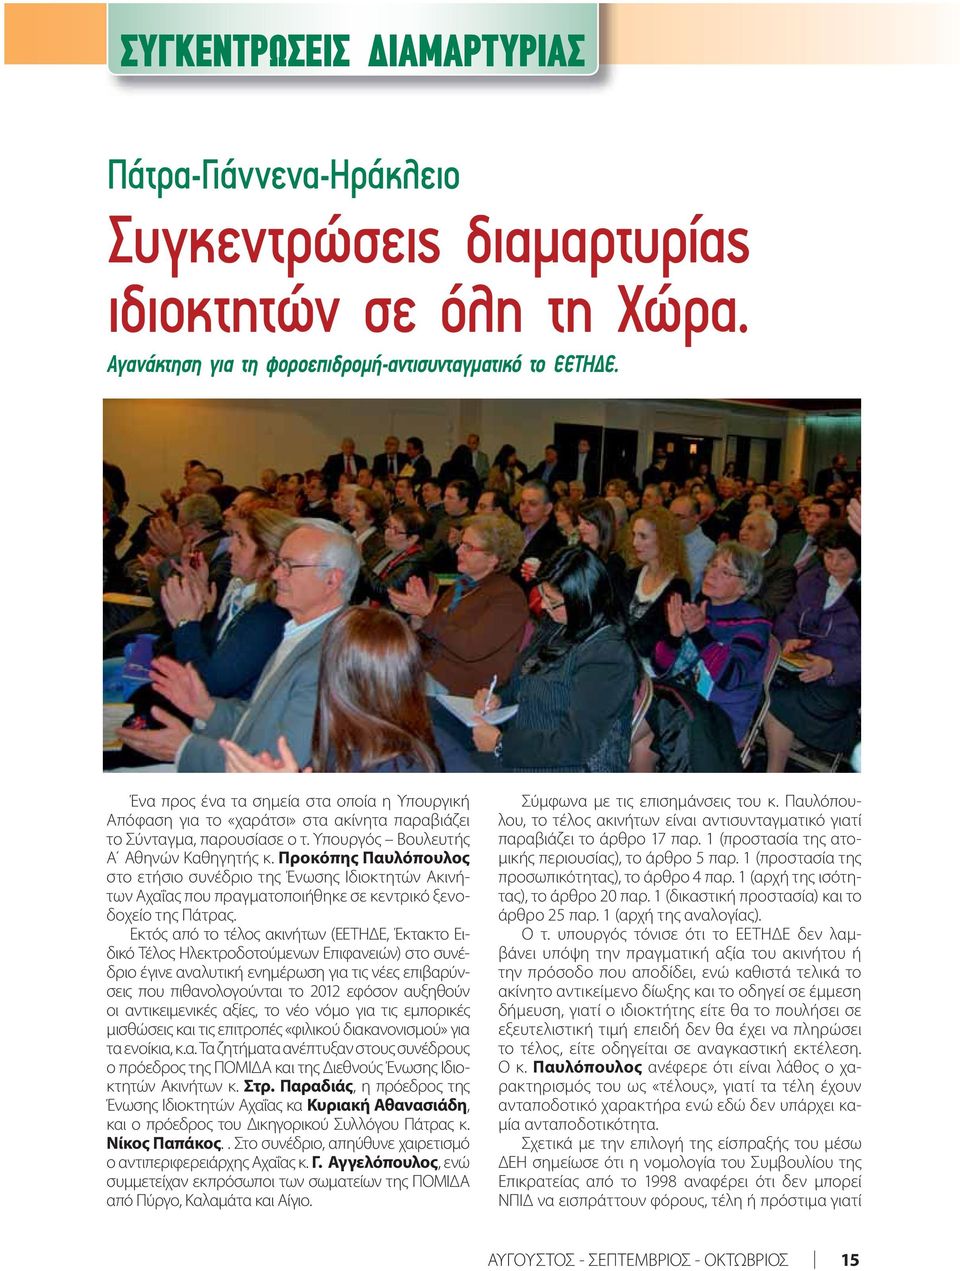 Προκόπης Παυλόπουλος στο ετήσιο συνέδριο της Ένωσης Ιδιοκτητών Ακινήτων Αχαΐας που πραγματοποιήθηκε σε κεντρικό ξενοδοχείο της Πάτρας.